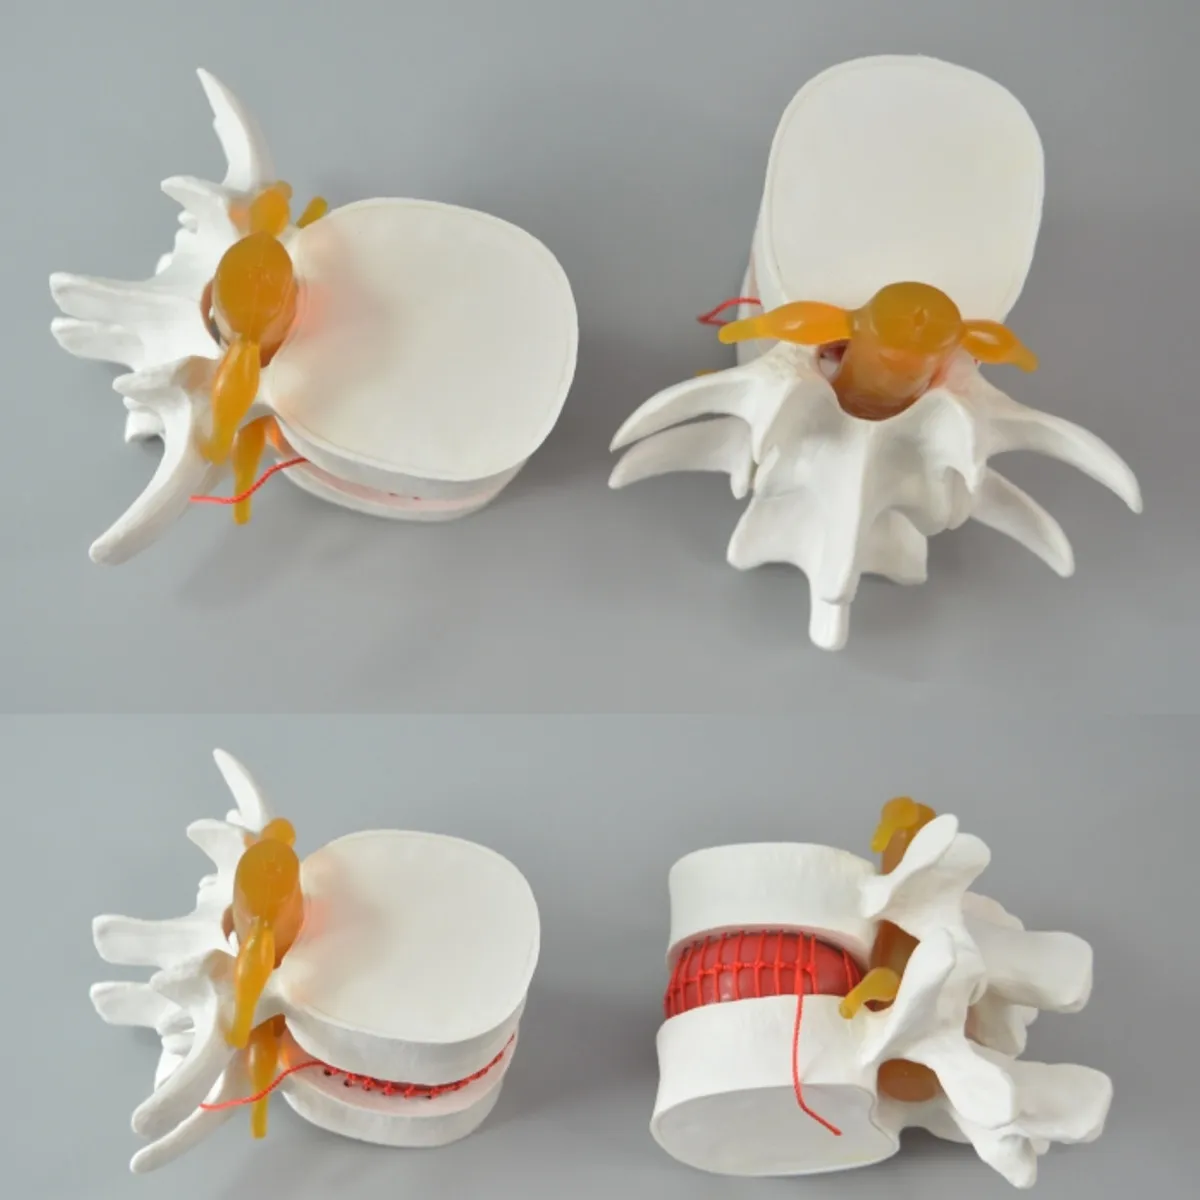 Человеческий анатомический Скелет спина поясница дисковая грыжа обучающая модель мозговой череп травматический пистолет школьные принадлежности медицинский инструмент